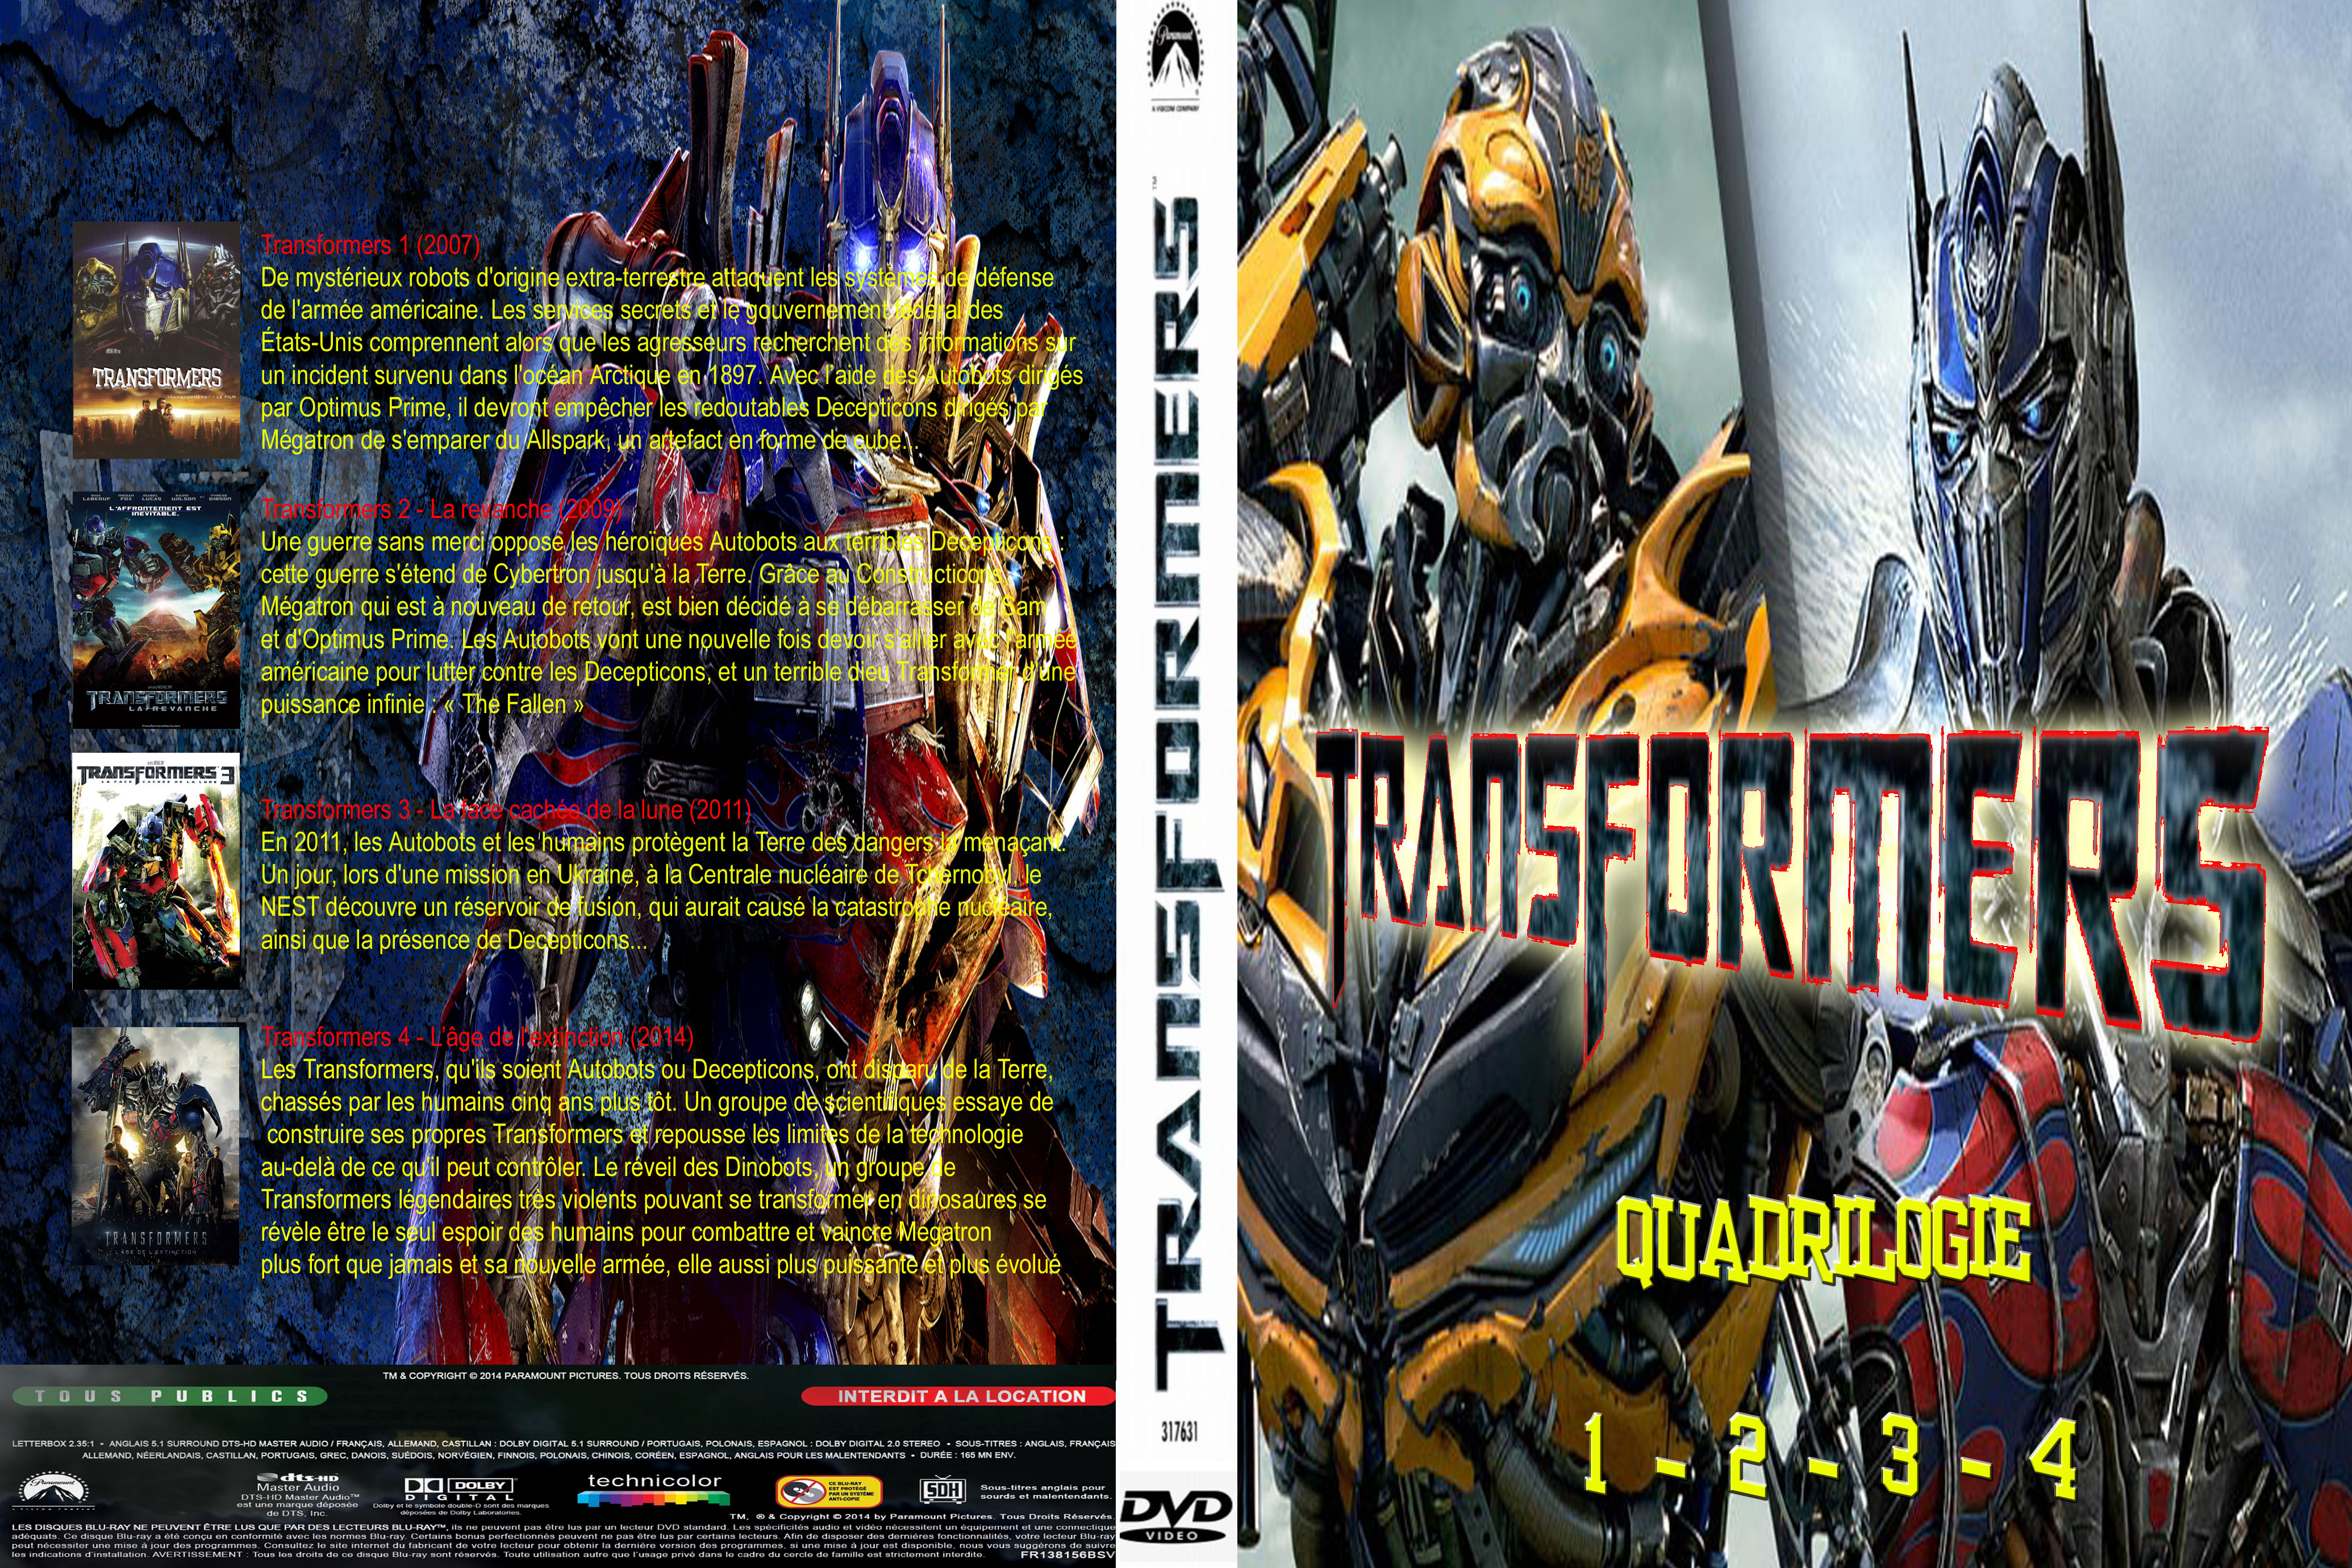 Jaquette DVD Transformers Quadrilogie custom v2